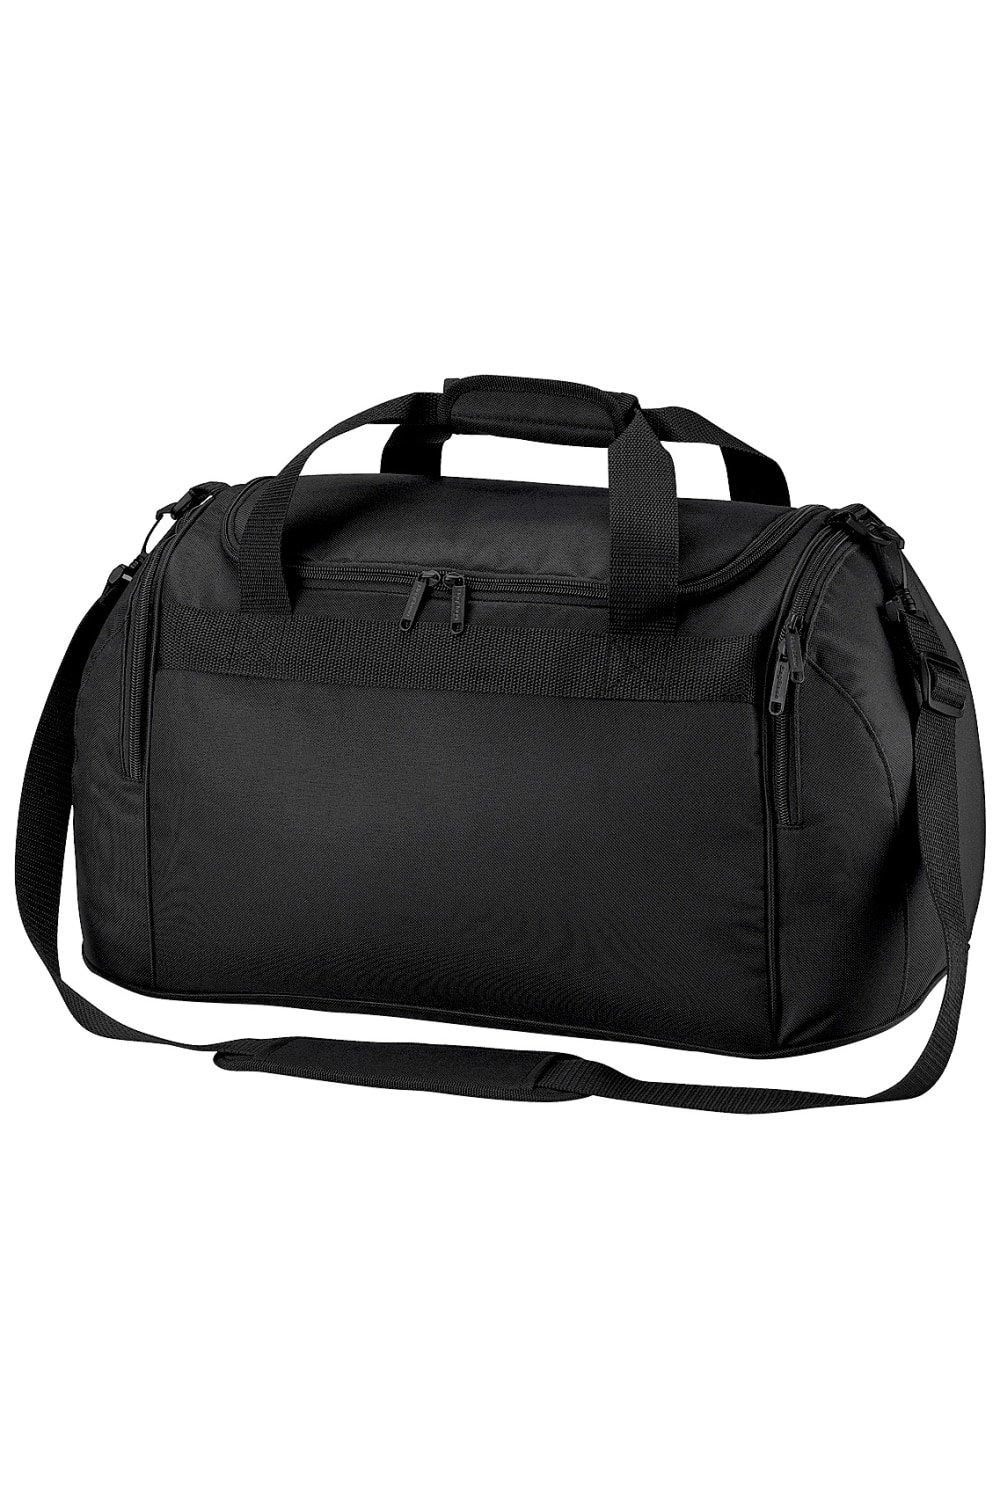 Дорожная сумка для фристайла/спортивная сумка (26 литров) (2 шт. в упаковке) Bagbase, черный цена и фото